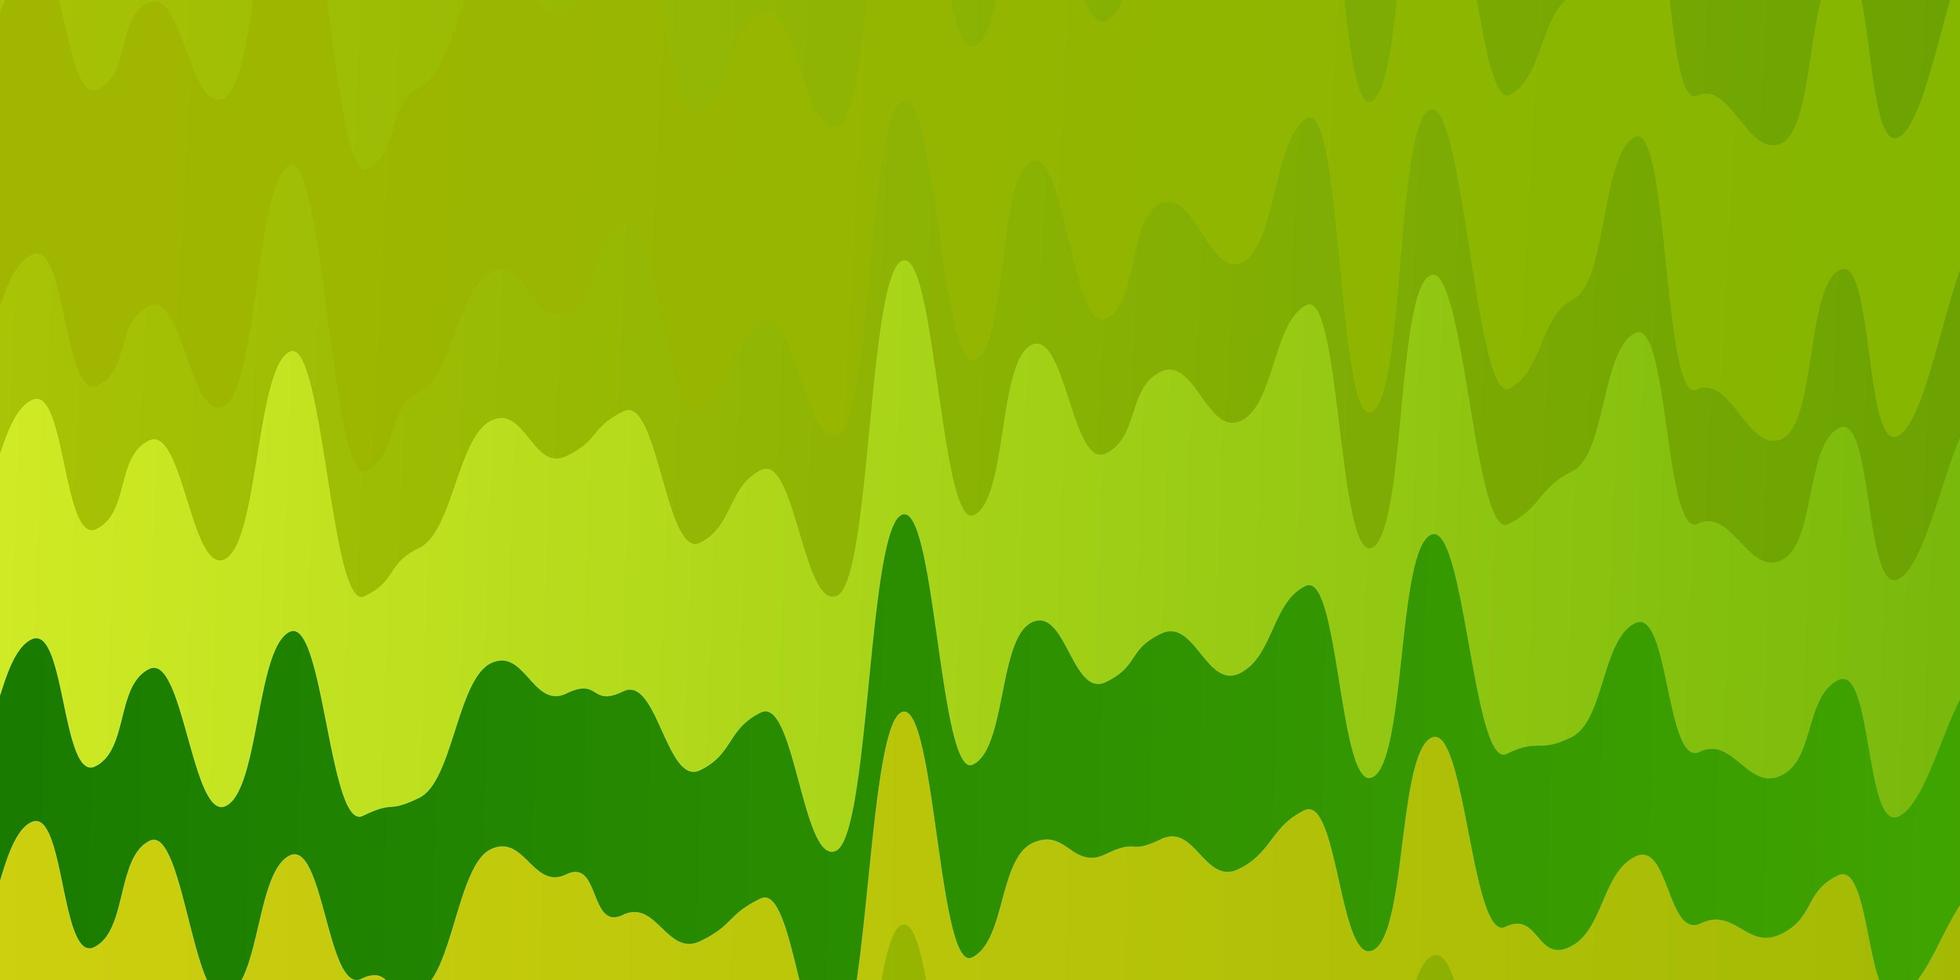 ljusgrön, gul vektorbakgrund med cirkelbåge. illustration i halvtonstil med lutningskurvor. mall för din ui-design. vektor